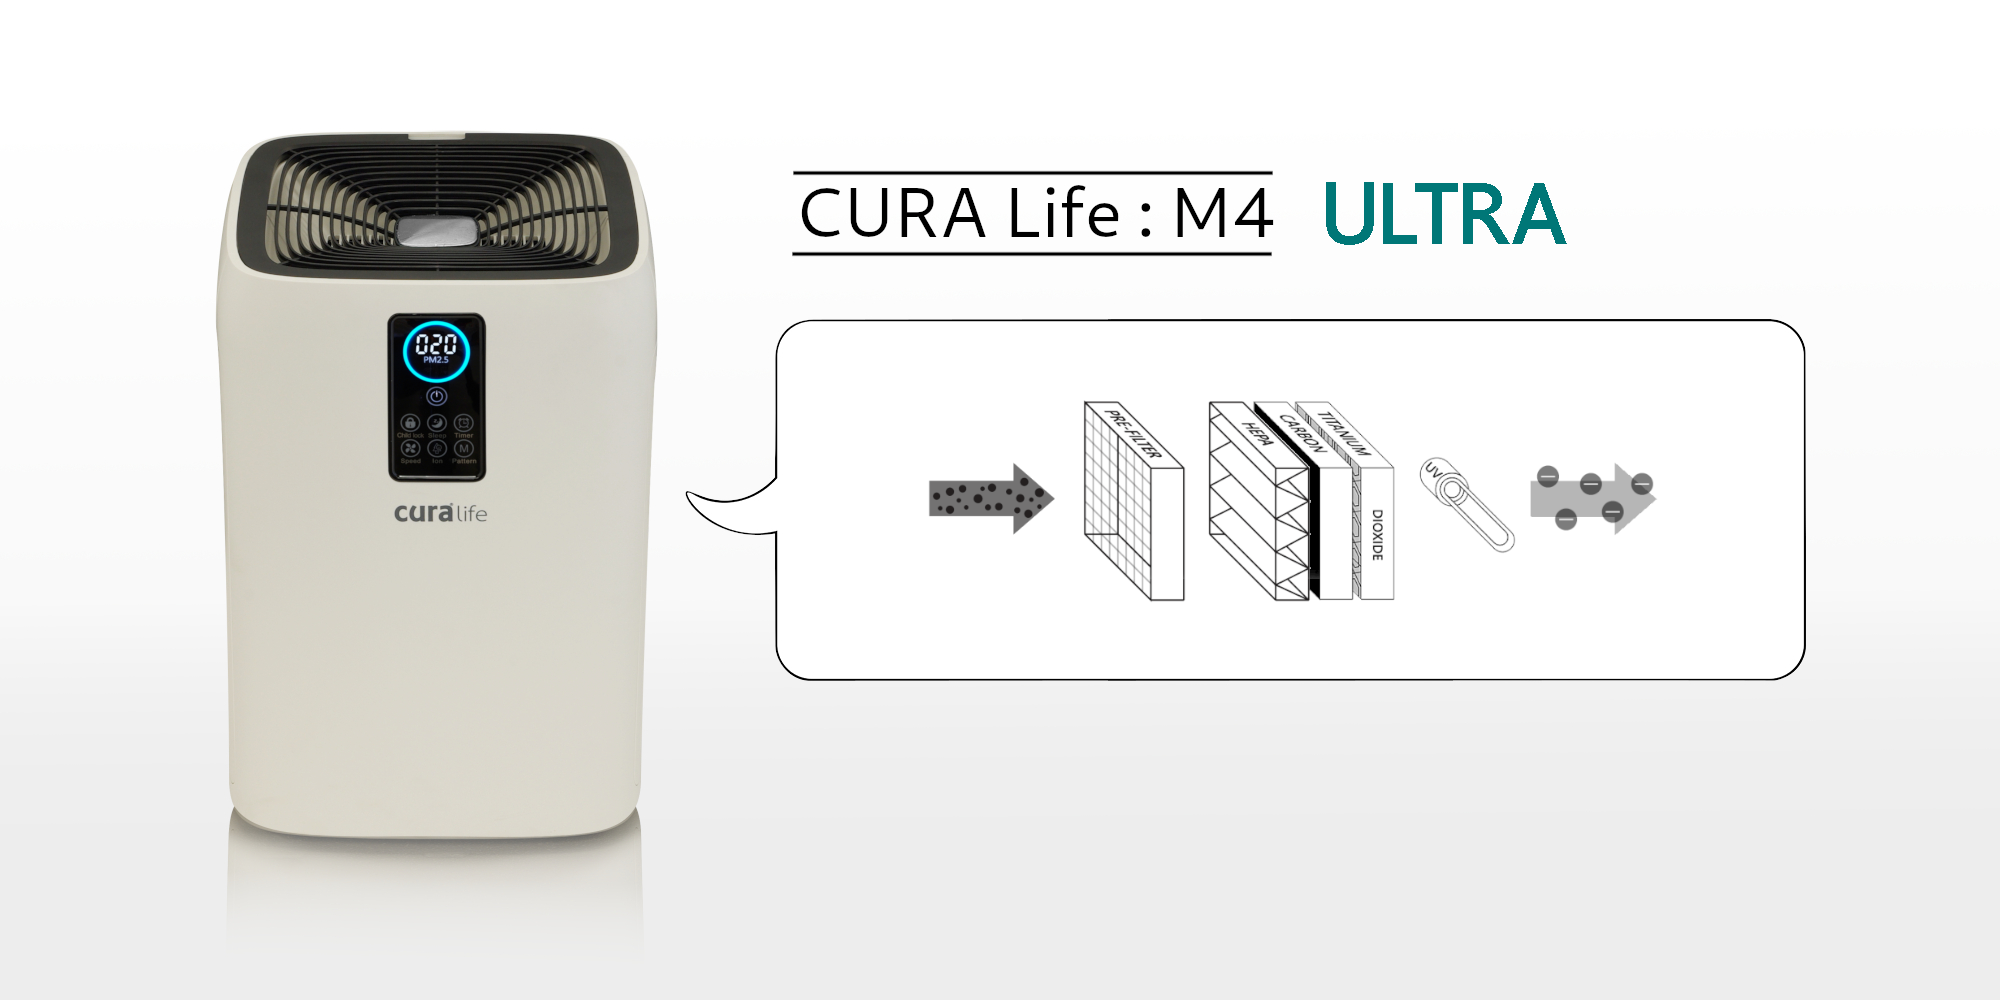 เครื่องฟอกอากาศ กรองดักกำจัดฝุ่นด้วย Pre-filter และ HEPA filter ดักจับกลิ่นด้วย Activated Carbon ยี่ห้อ CURA Life รุ่น M4 สามารถดักจับฝุ่นละเอียดระดับ PM 2.5 ได้มากกว่า 99%